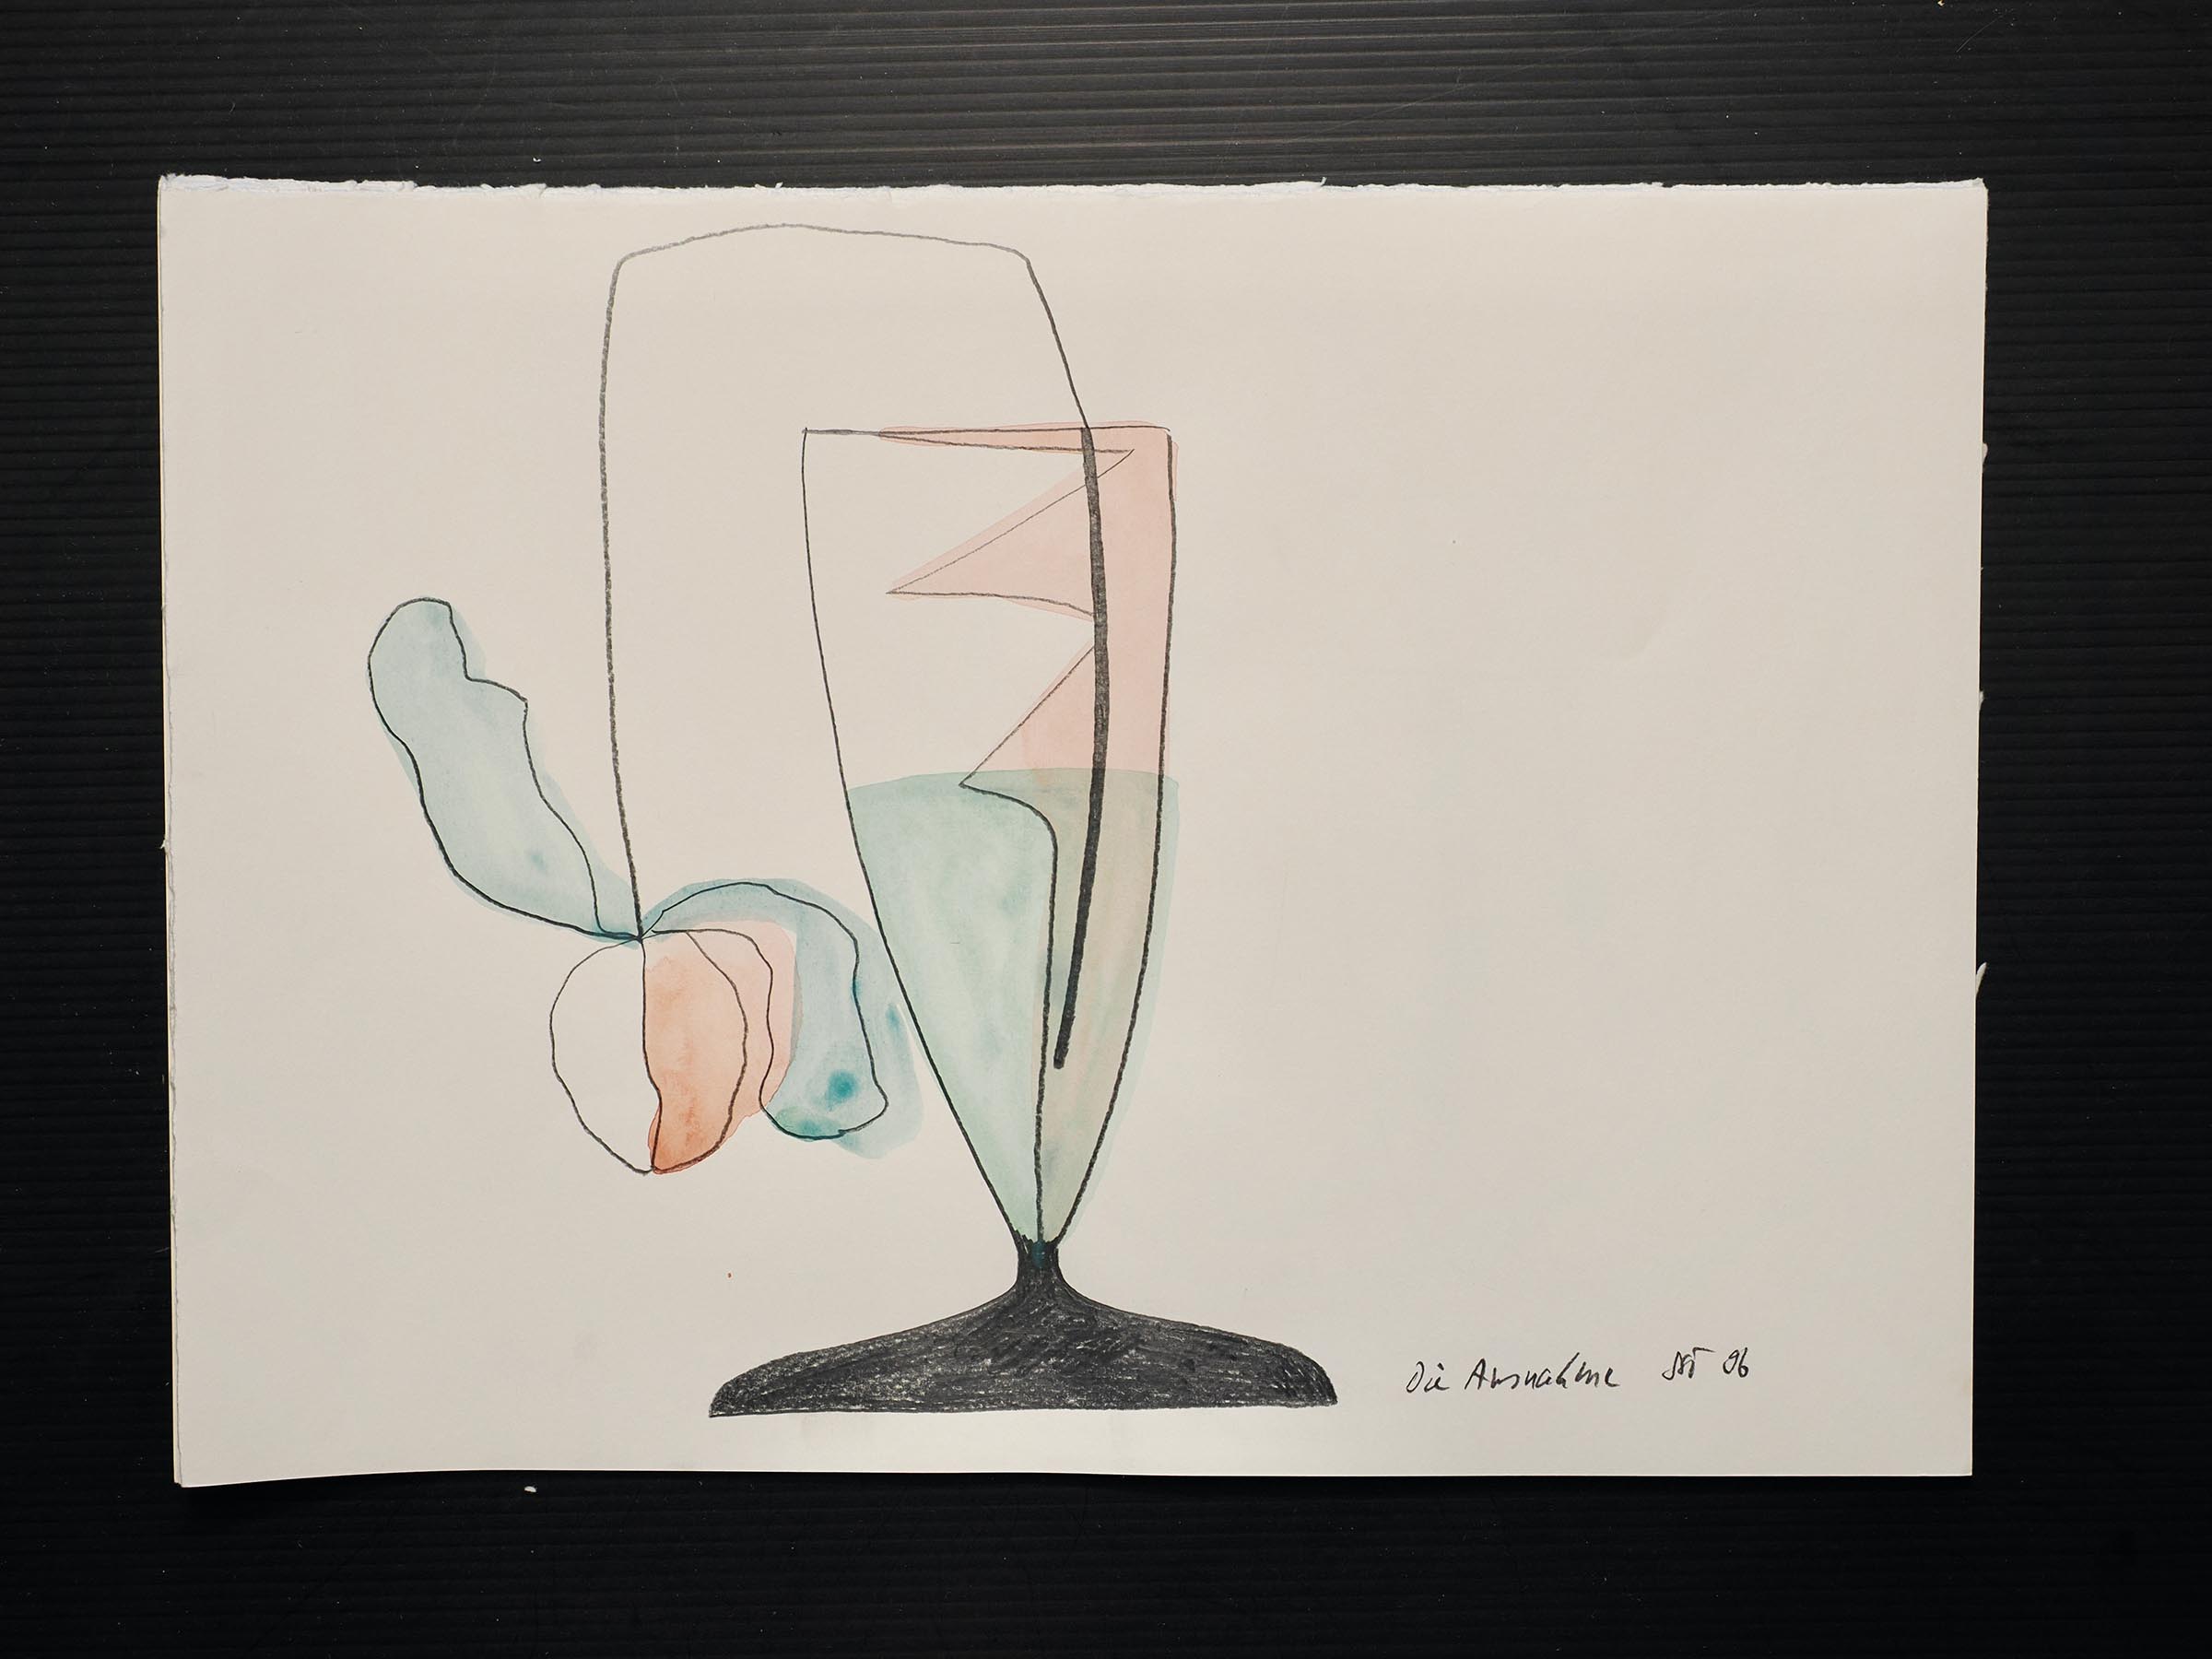 Aquarell, Tusche auf Papier. 25 x 35 cm.